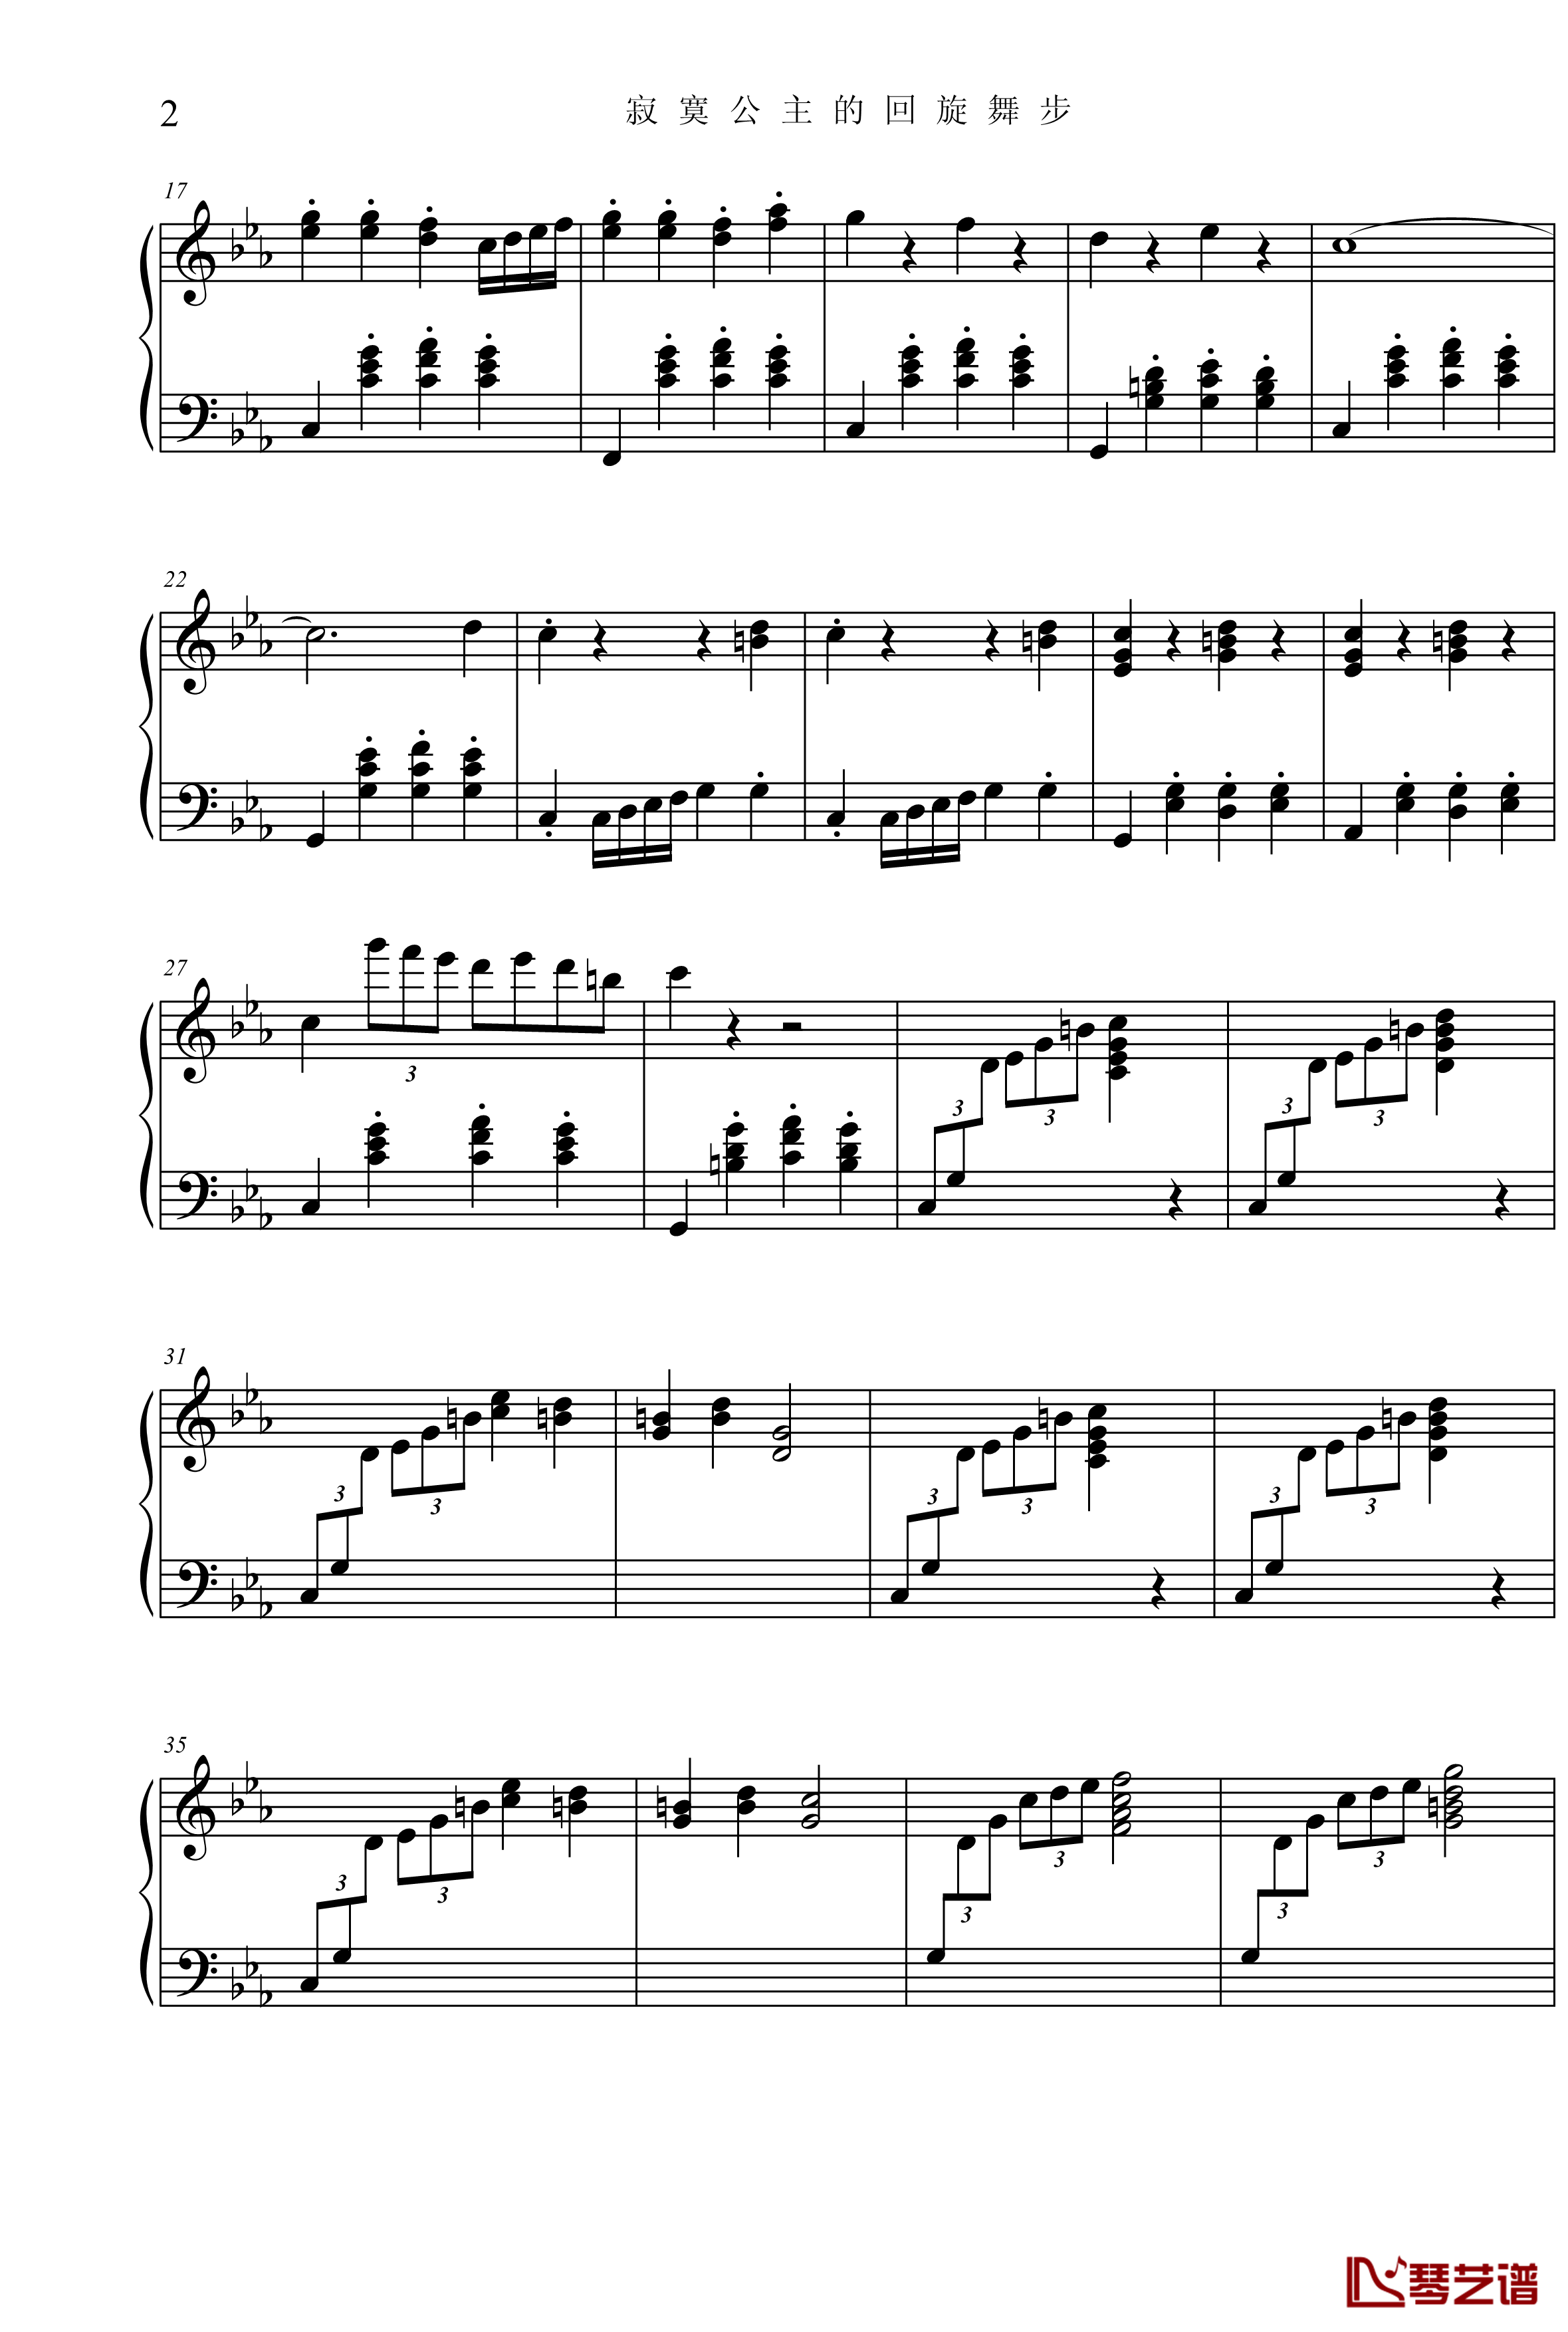 公主奏鸣曲第三乐章钢琴谱-舞步-项海波2